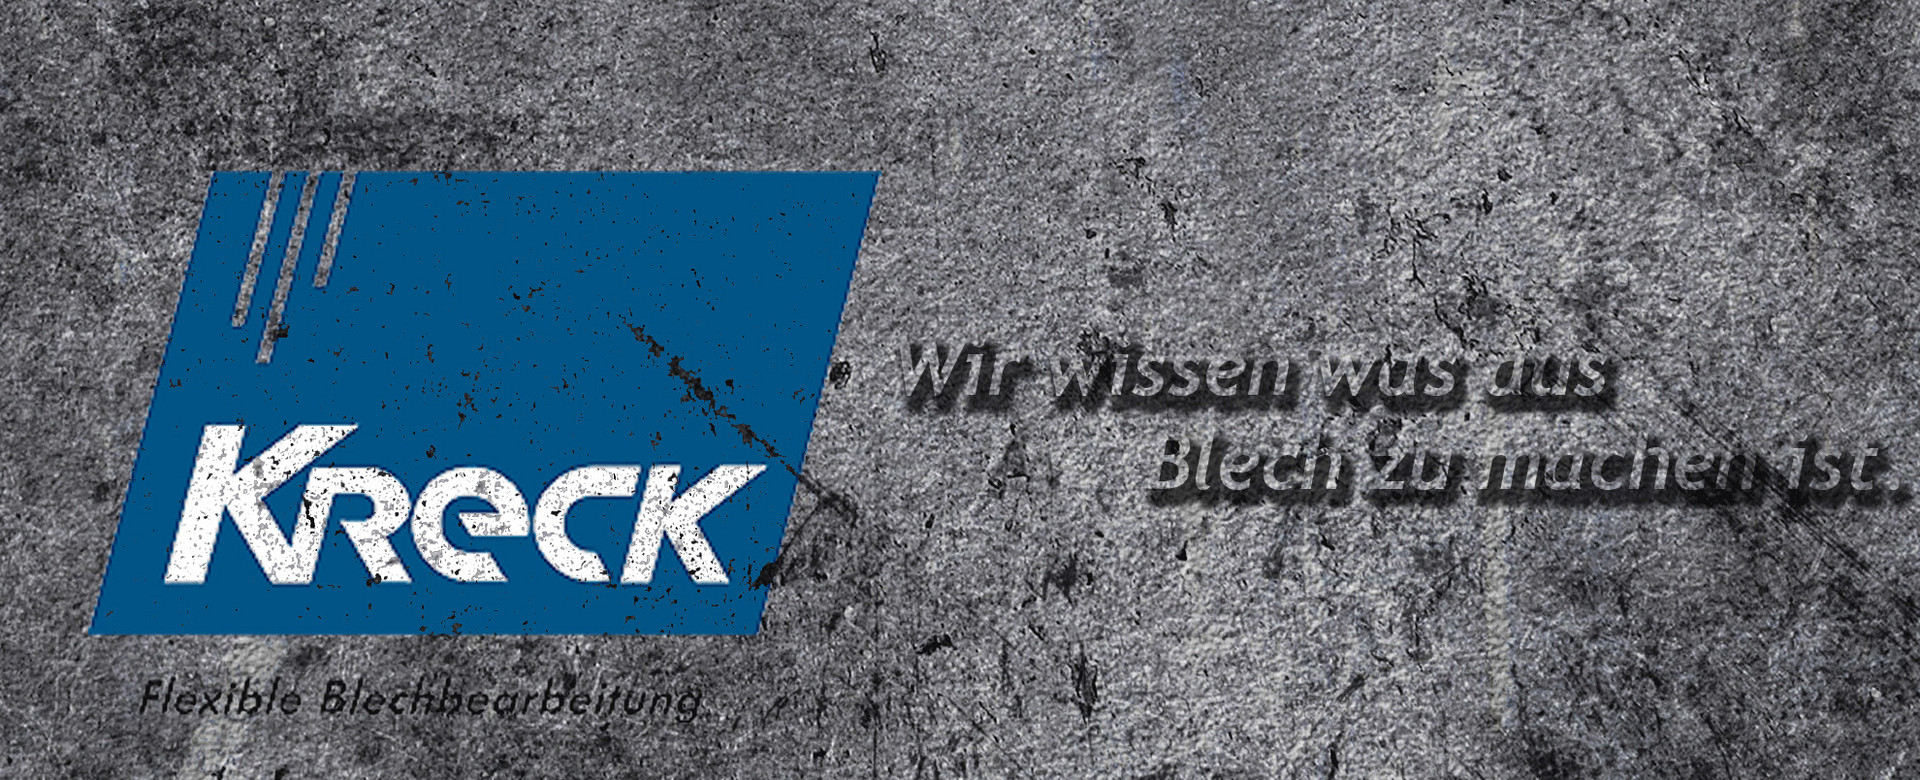 Kreck Metallwarenfabrik GmbH